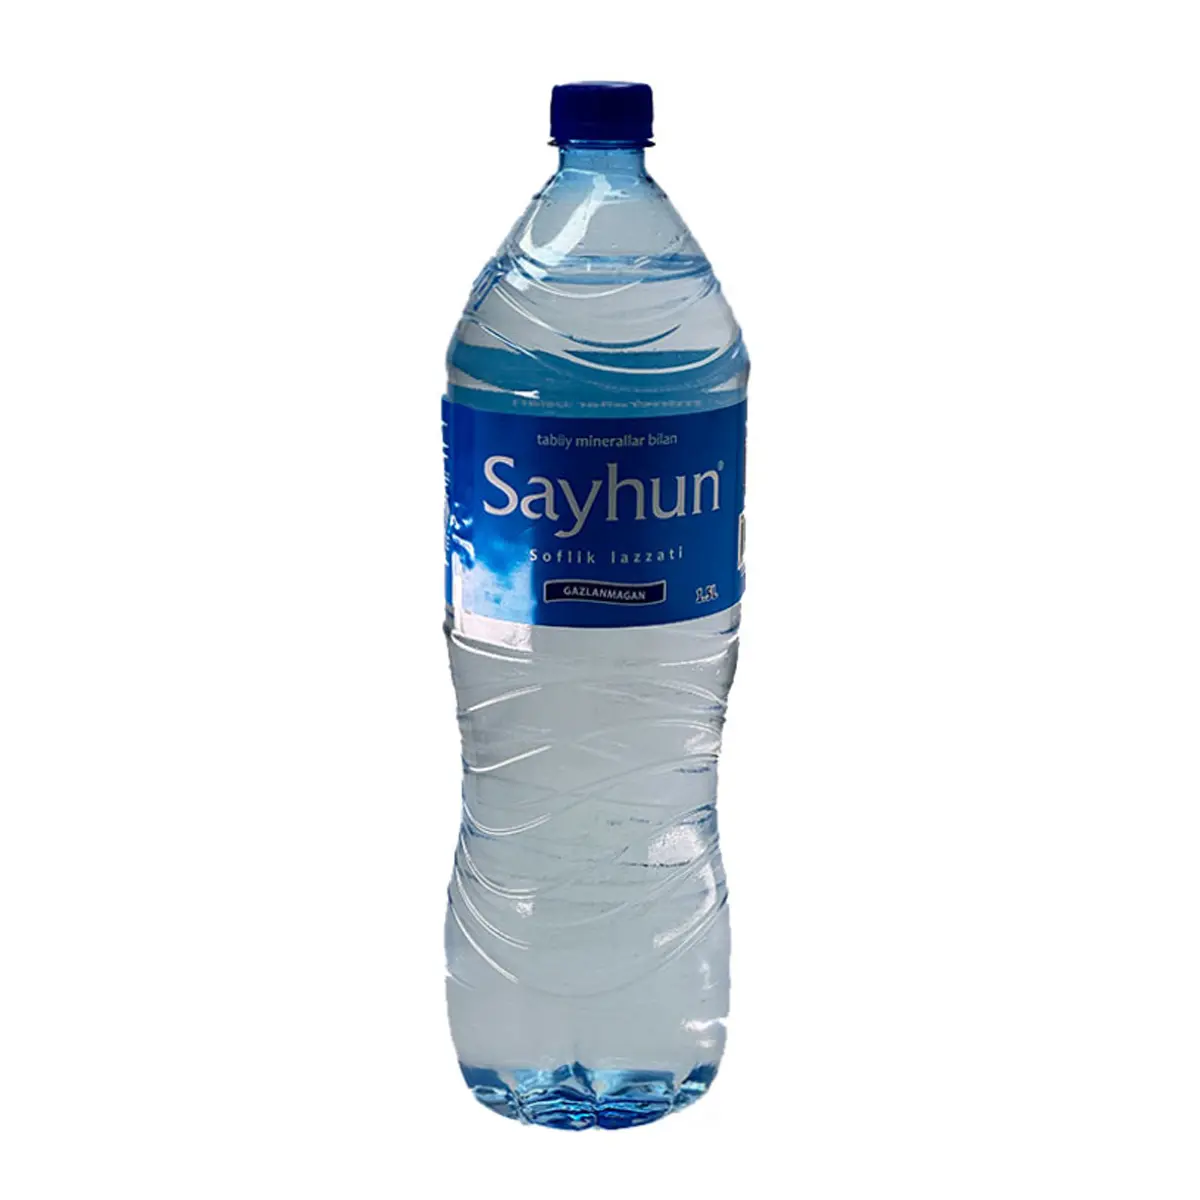 100% Качество, чистая вода 1,5 литр, натуральный продукт от Uzbekiatan